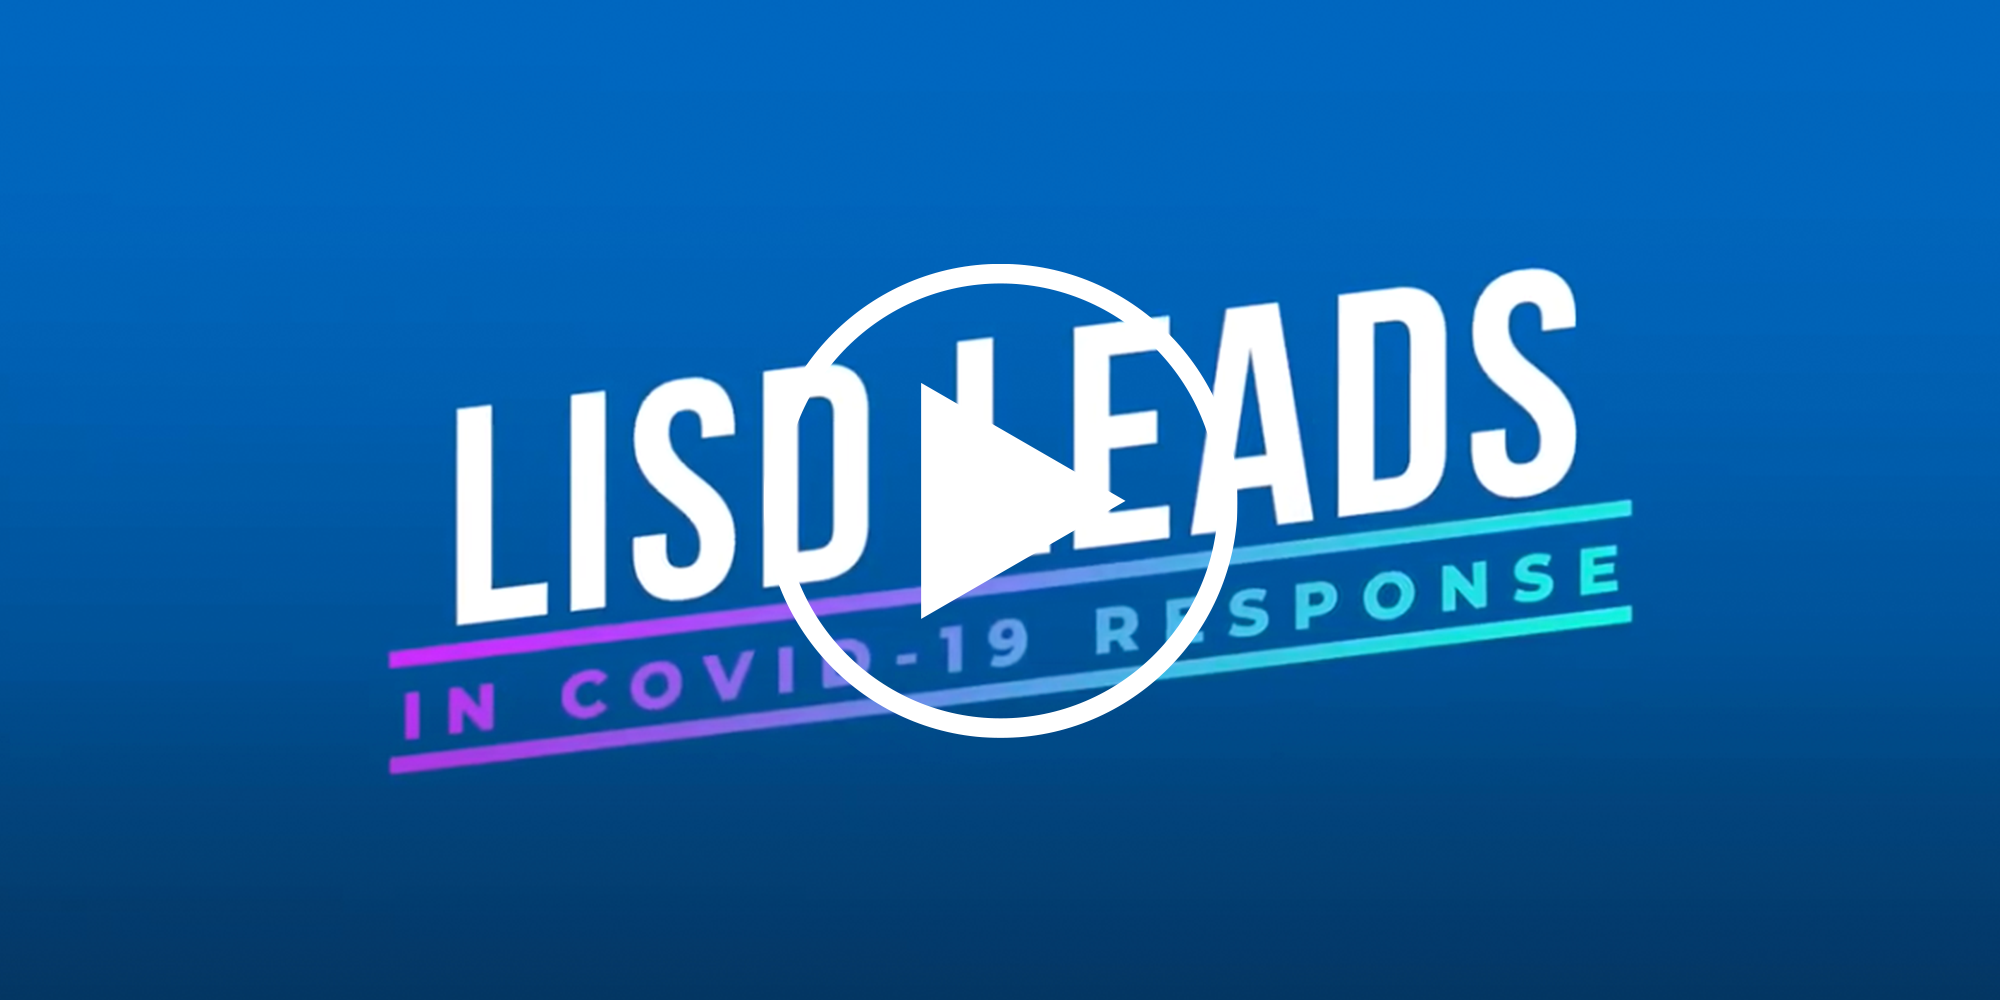 LISD Leads Video Thumbnail